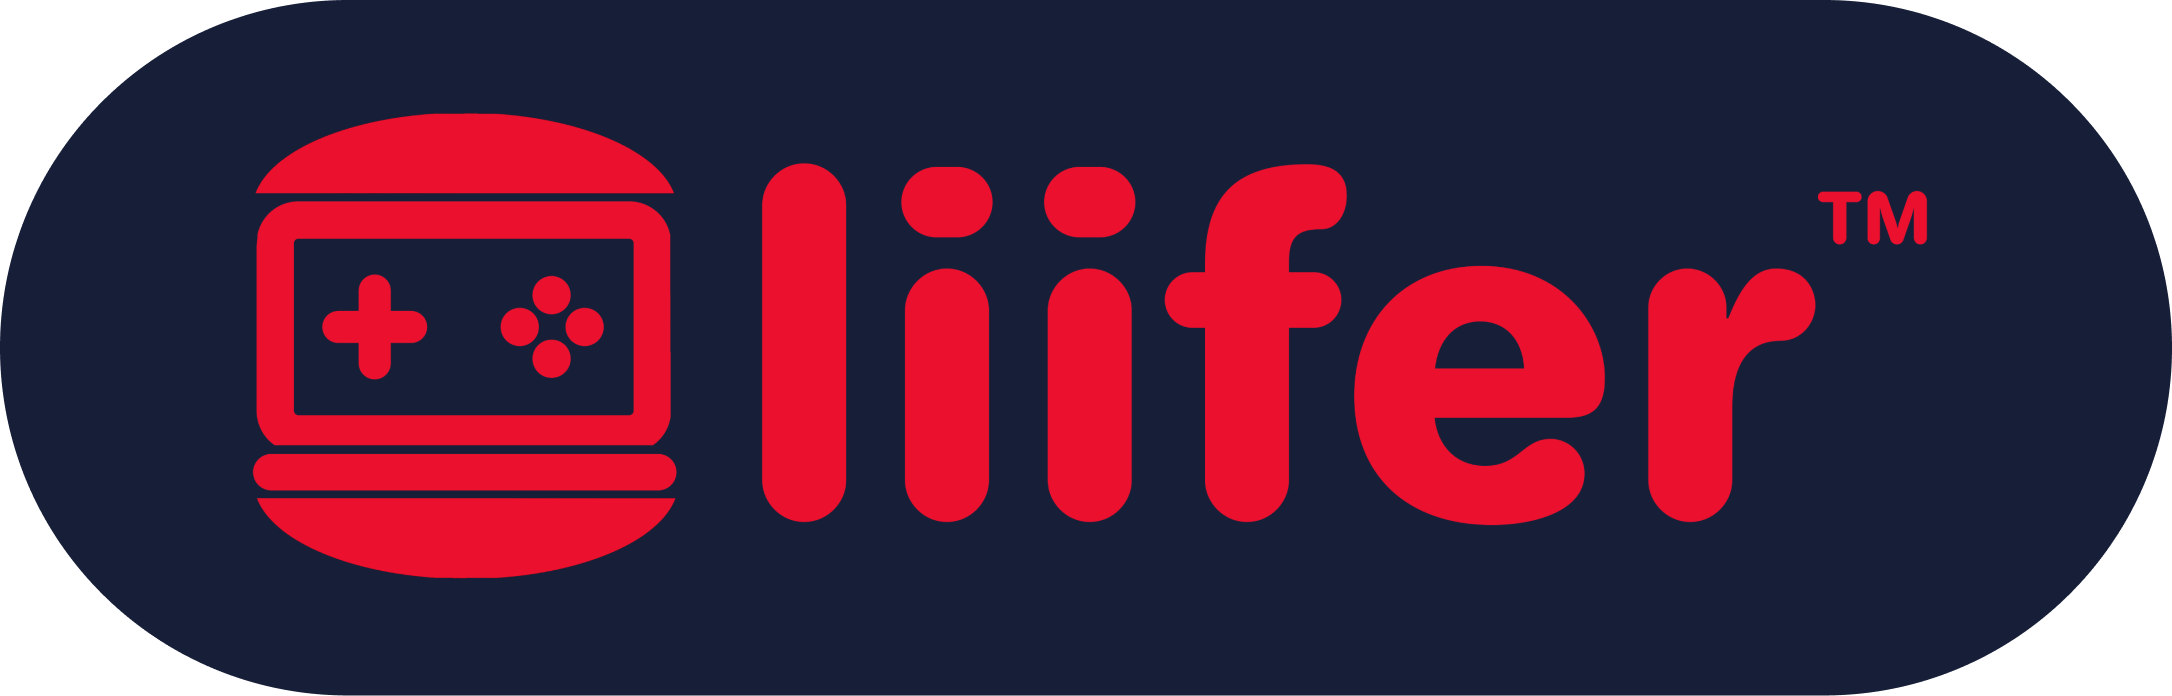 liifer food delivery ordering platform for Lilburn